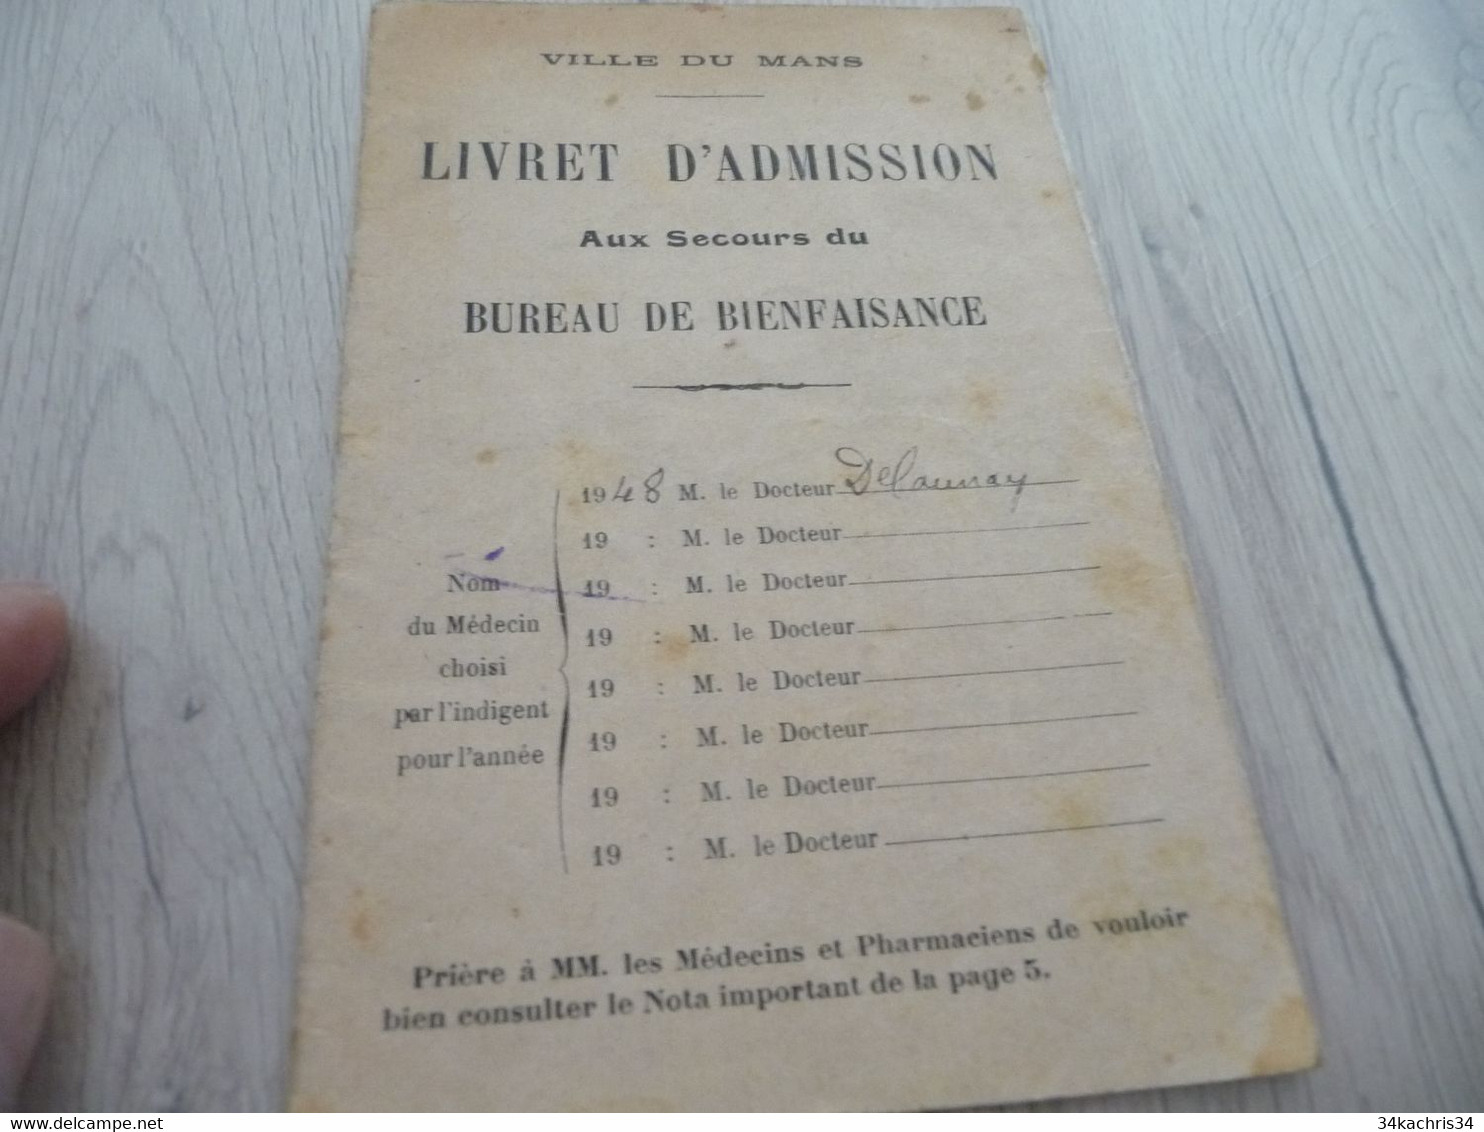 Livret D'admission Aux Secours Du Bureau De Bienfaisance De La Ville Du Mans Guerre 39/45 - Dokumente